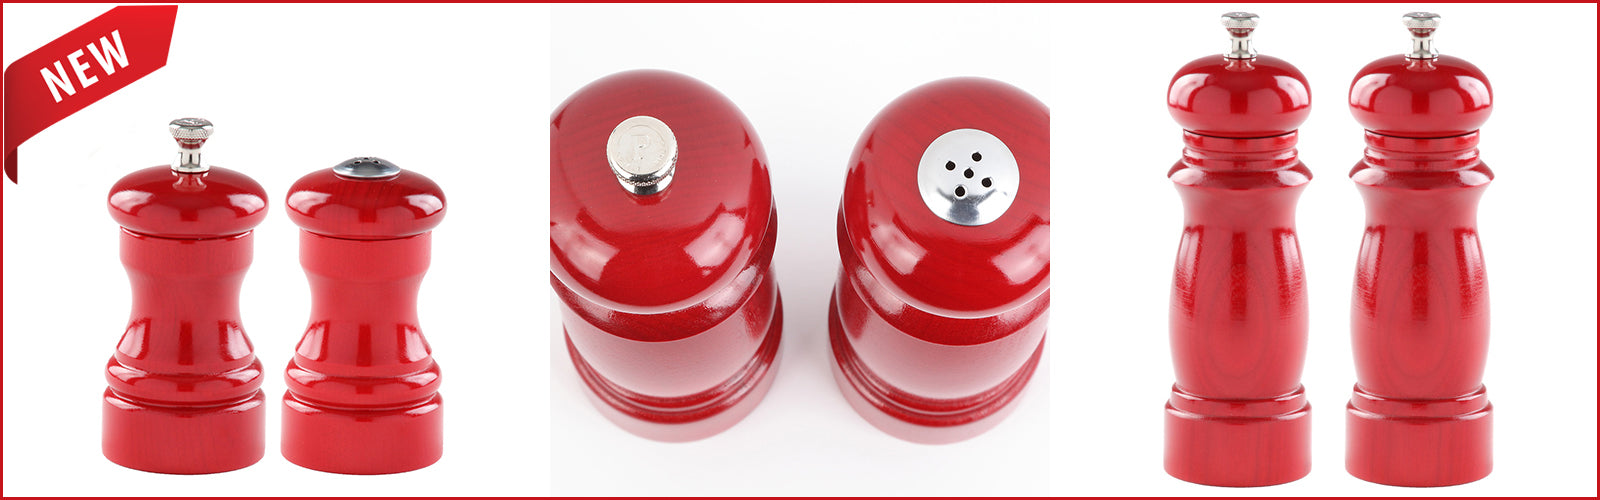 Vtg Green Bakelite Push Button Salt & Pepper Shakers Carvalite Made in USA